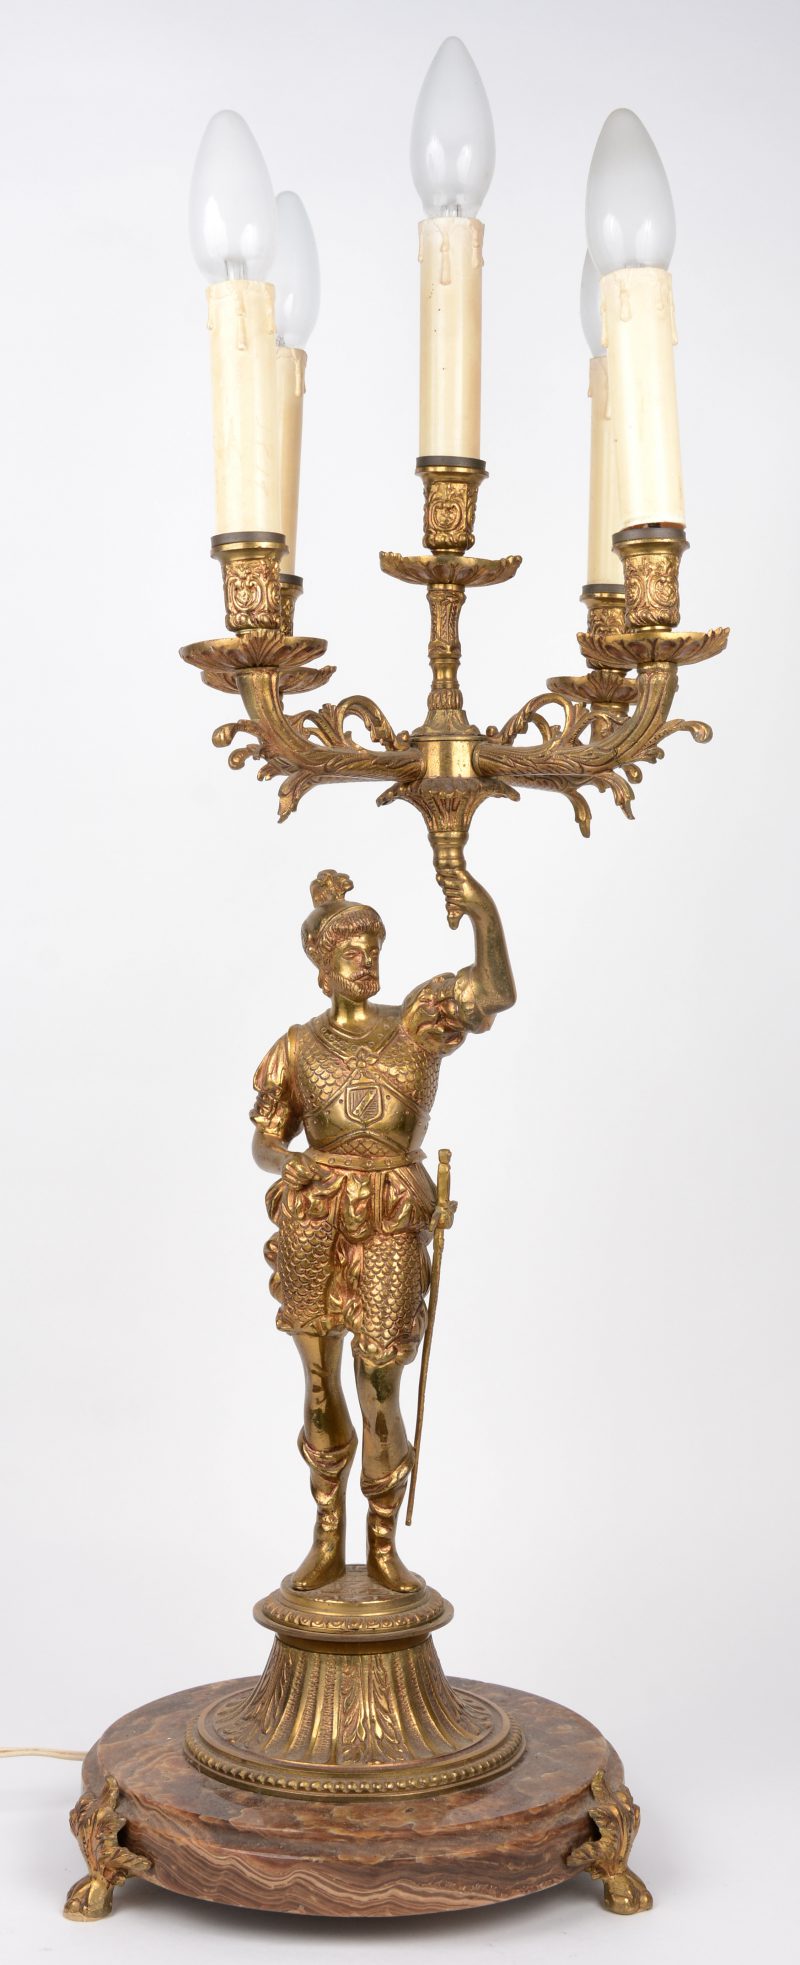 Een verguld bronzen kandelaar met vijf lichtpunten, gedragen door een ridder.